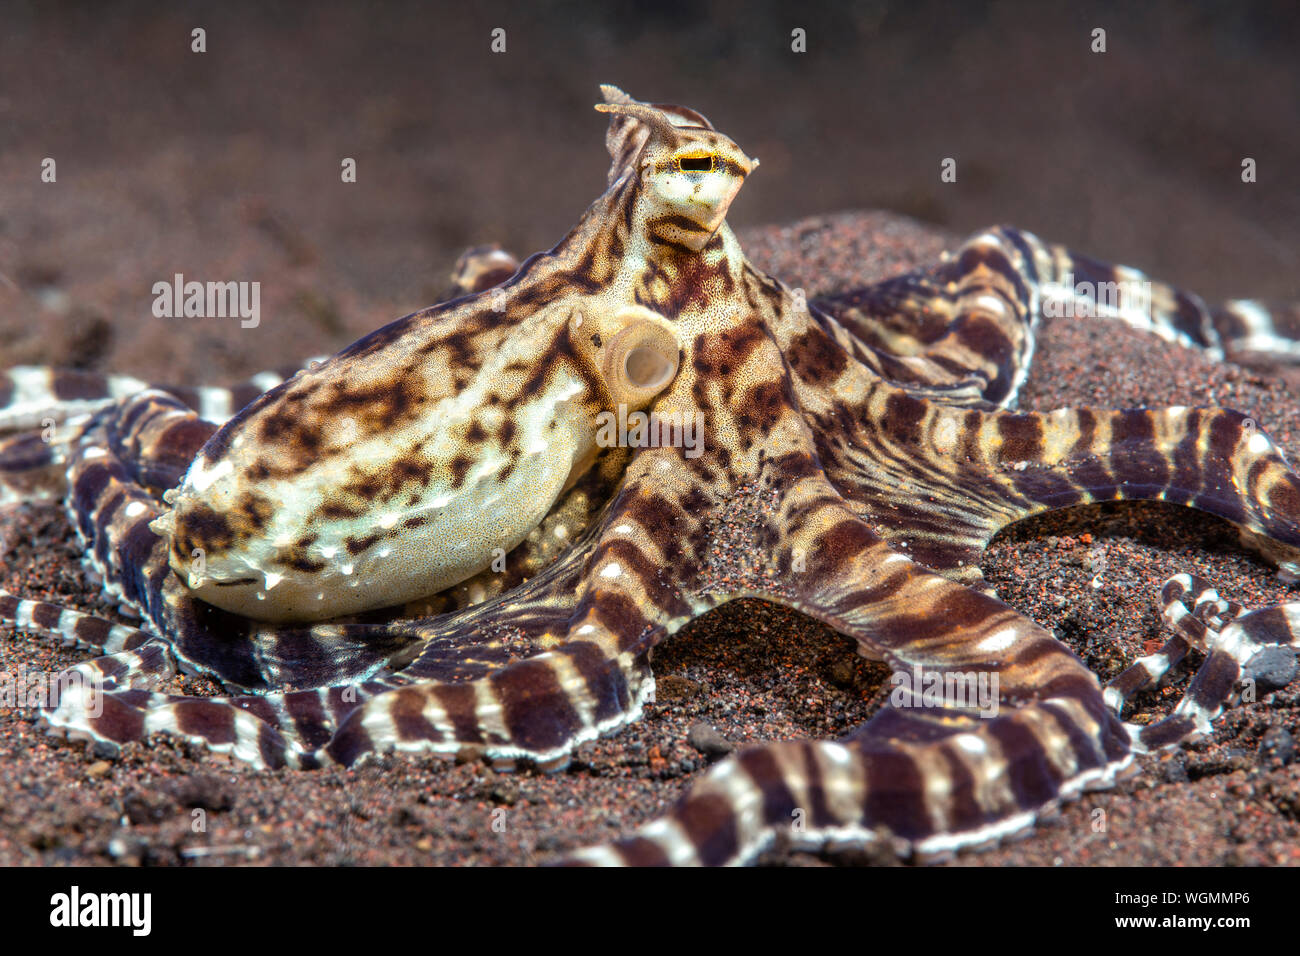 Mimic octopus crawl attraverso un letto di alghe Tulamben, Indonesia. Questi polipi sono in grado di rappresentare altri specie locali di polpo. Foto Stock